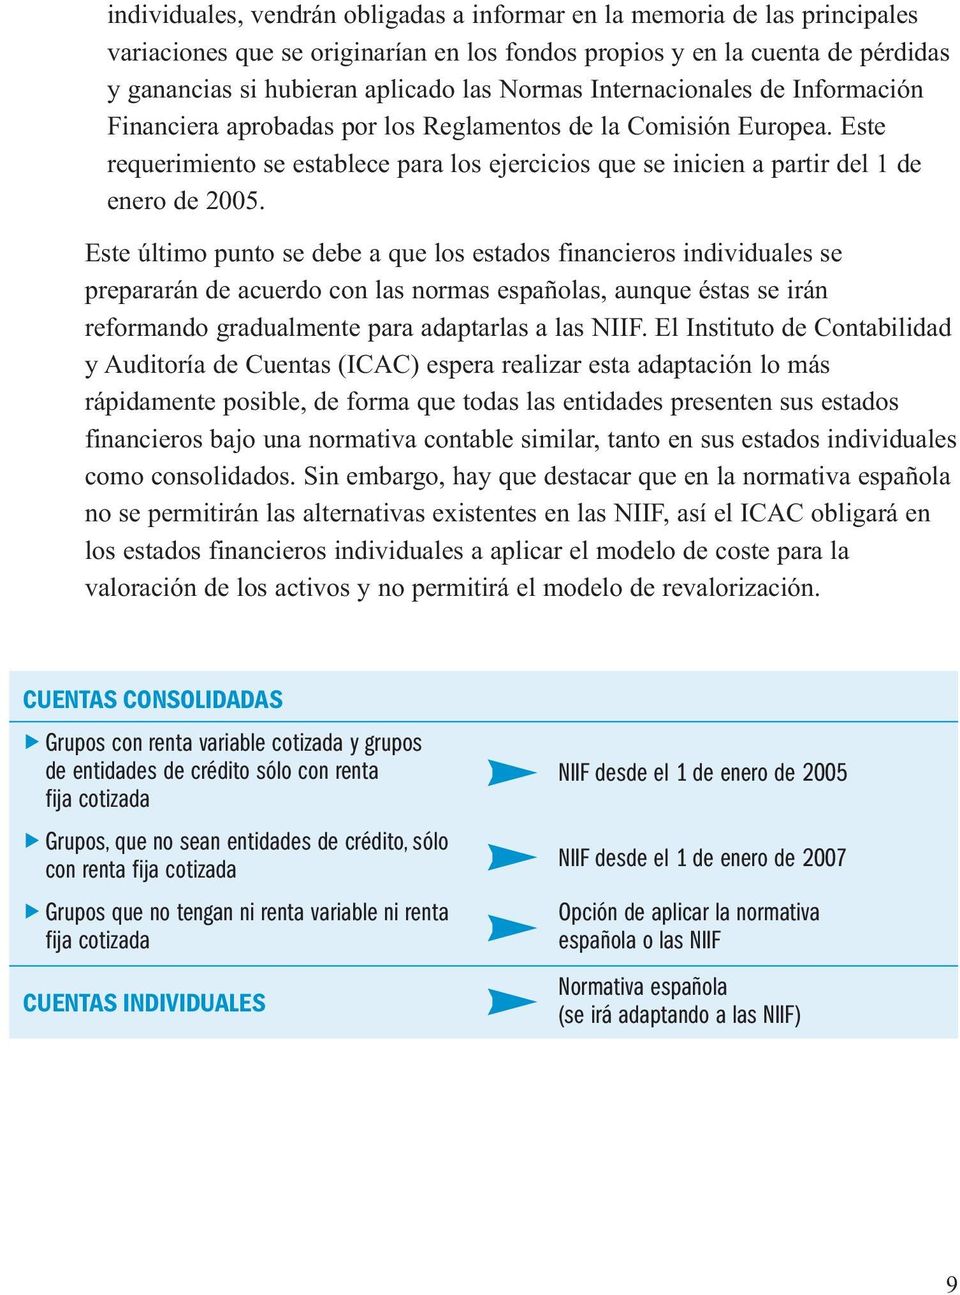 Este último punto se debe a que los estados financieros individuales se prepararán de acuerdo con las normas españolas, aunque éstas se irán reformando gradualmente para adaptarlas a las NIIF.